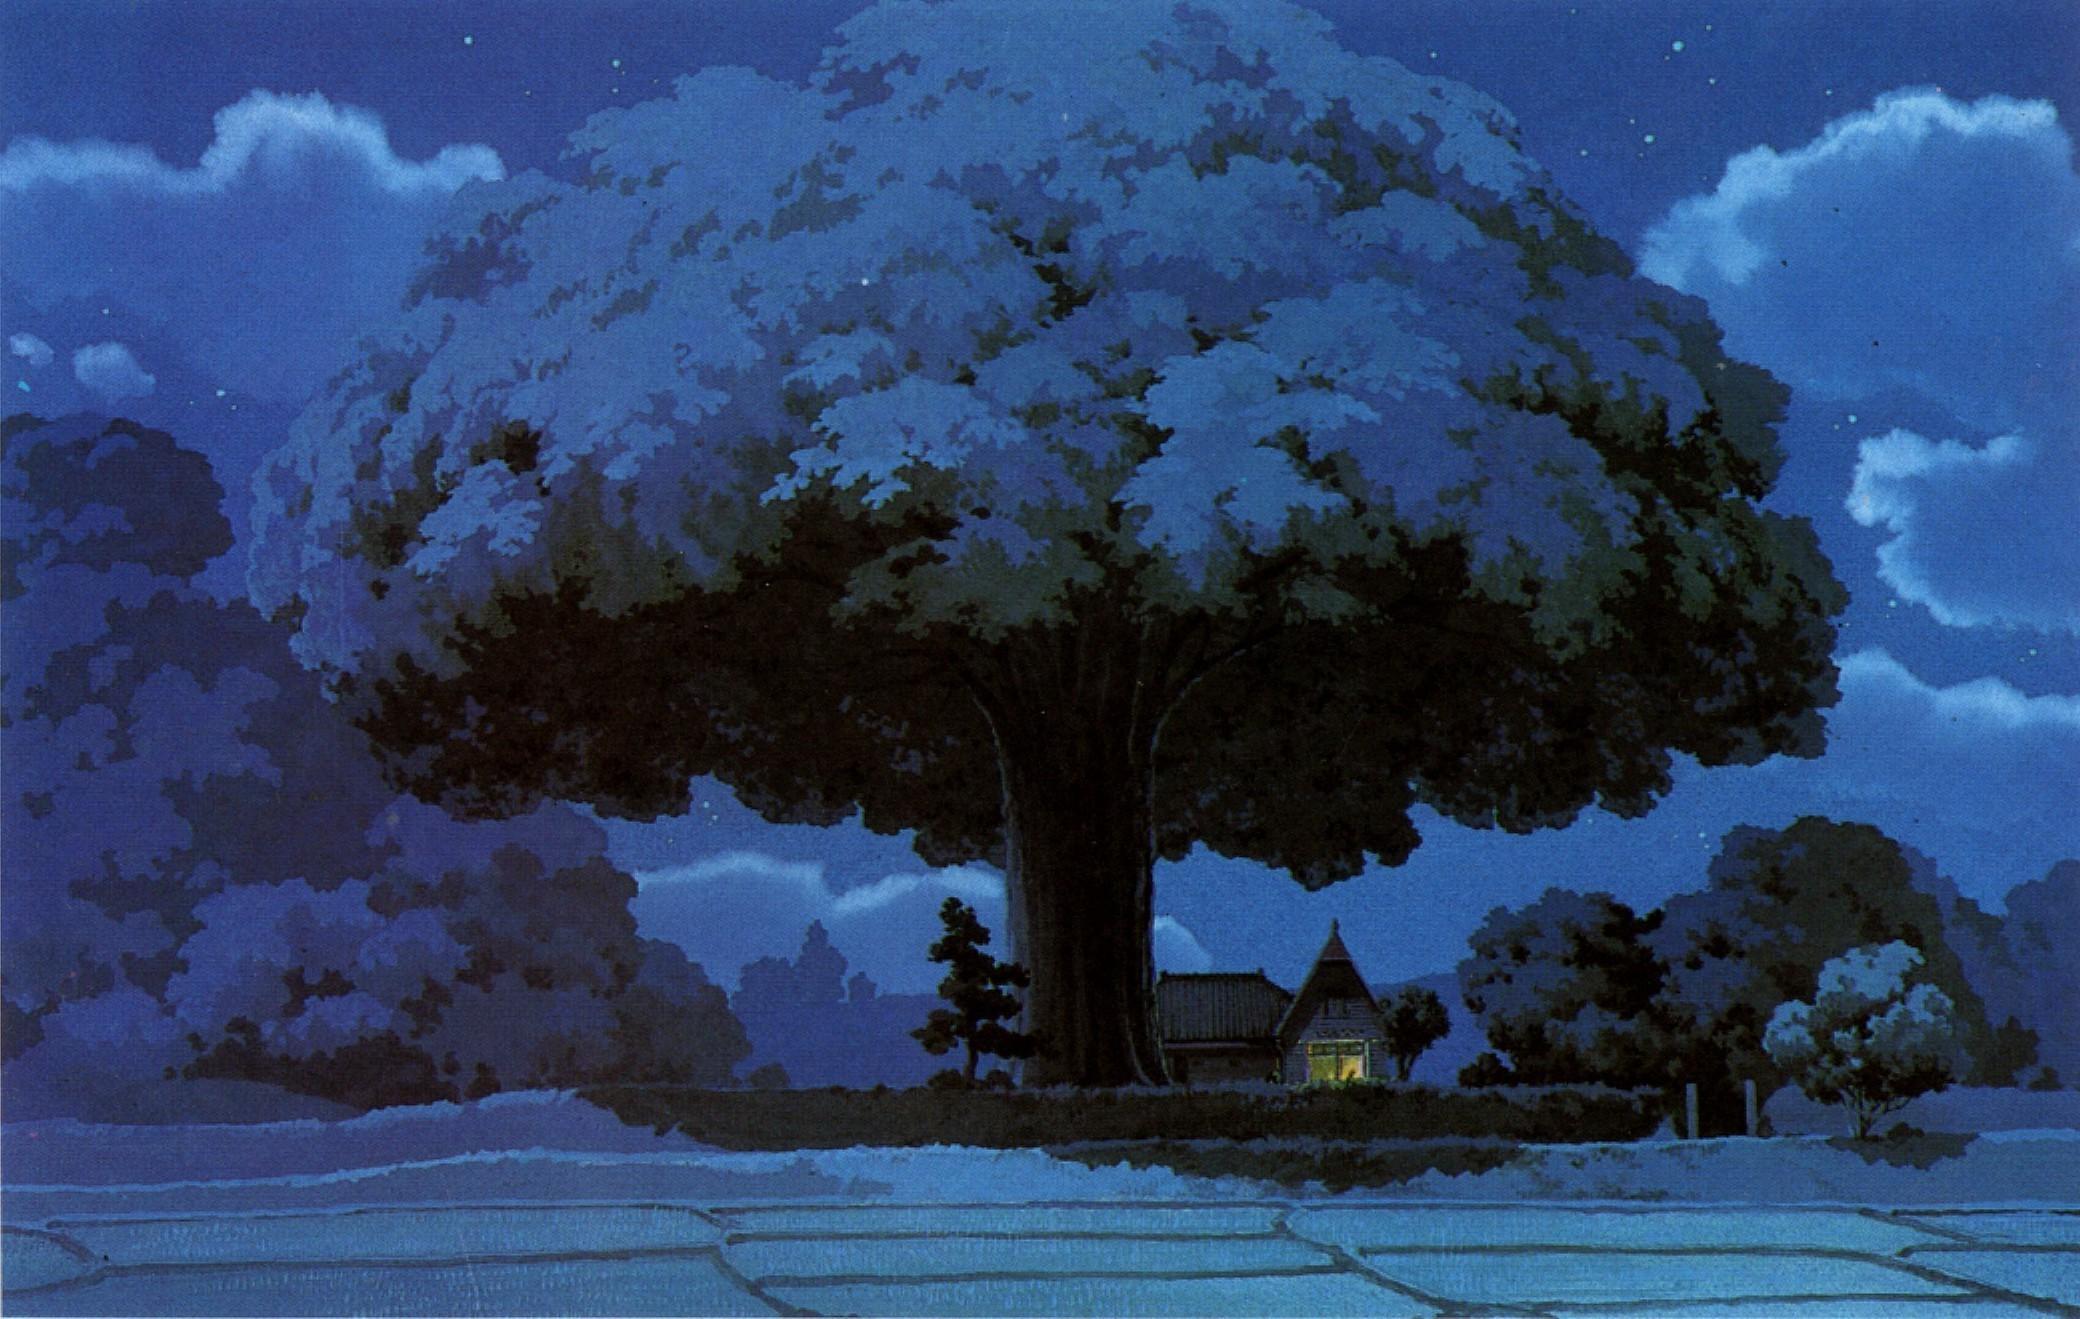 Studio Ghibli Wallpaper Ghibli Aesthetic Wallpaper